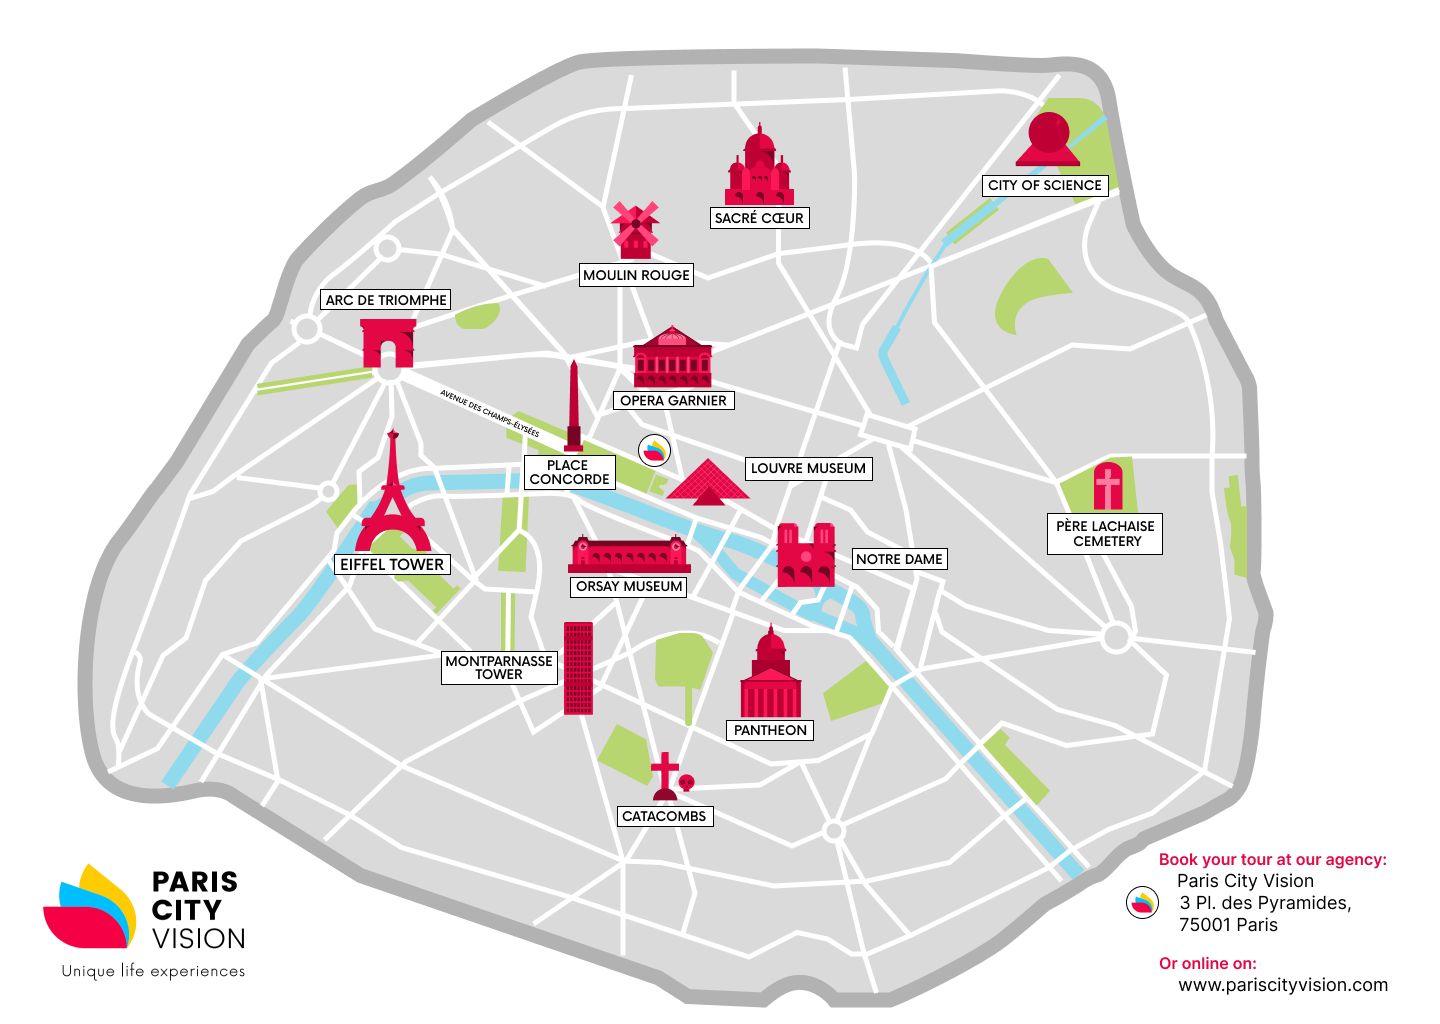 Maps - City maps, atlases - Paris City Map